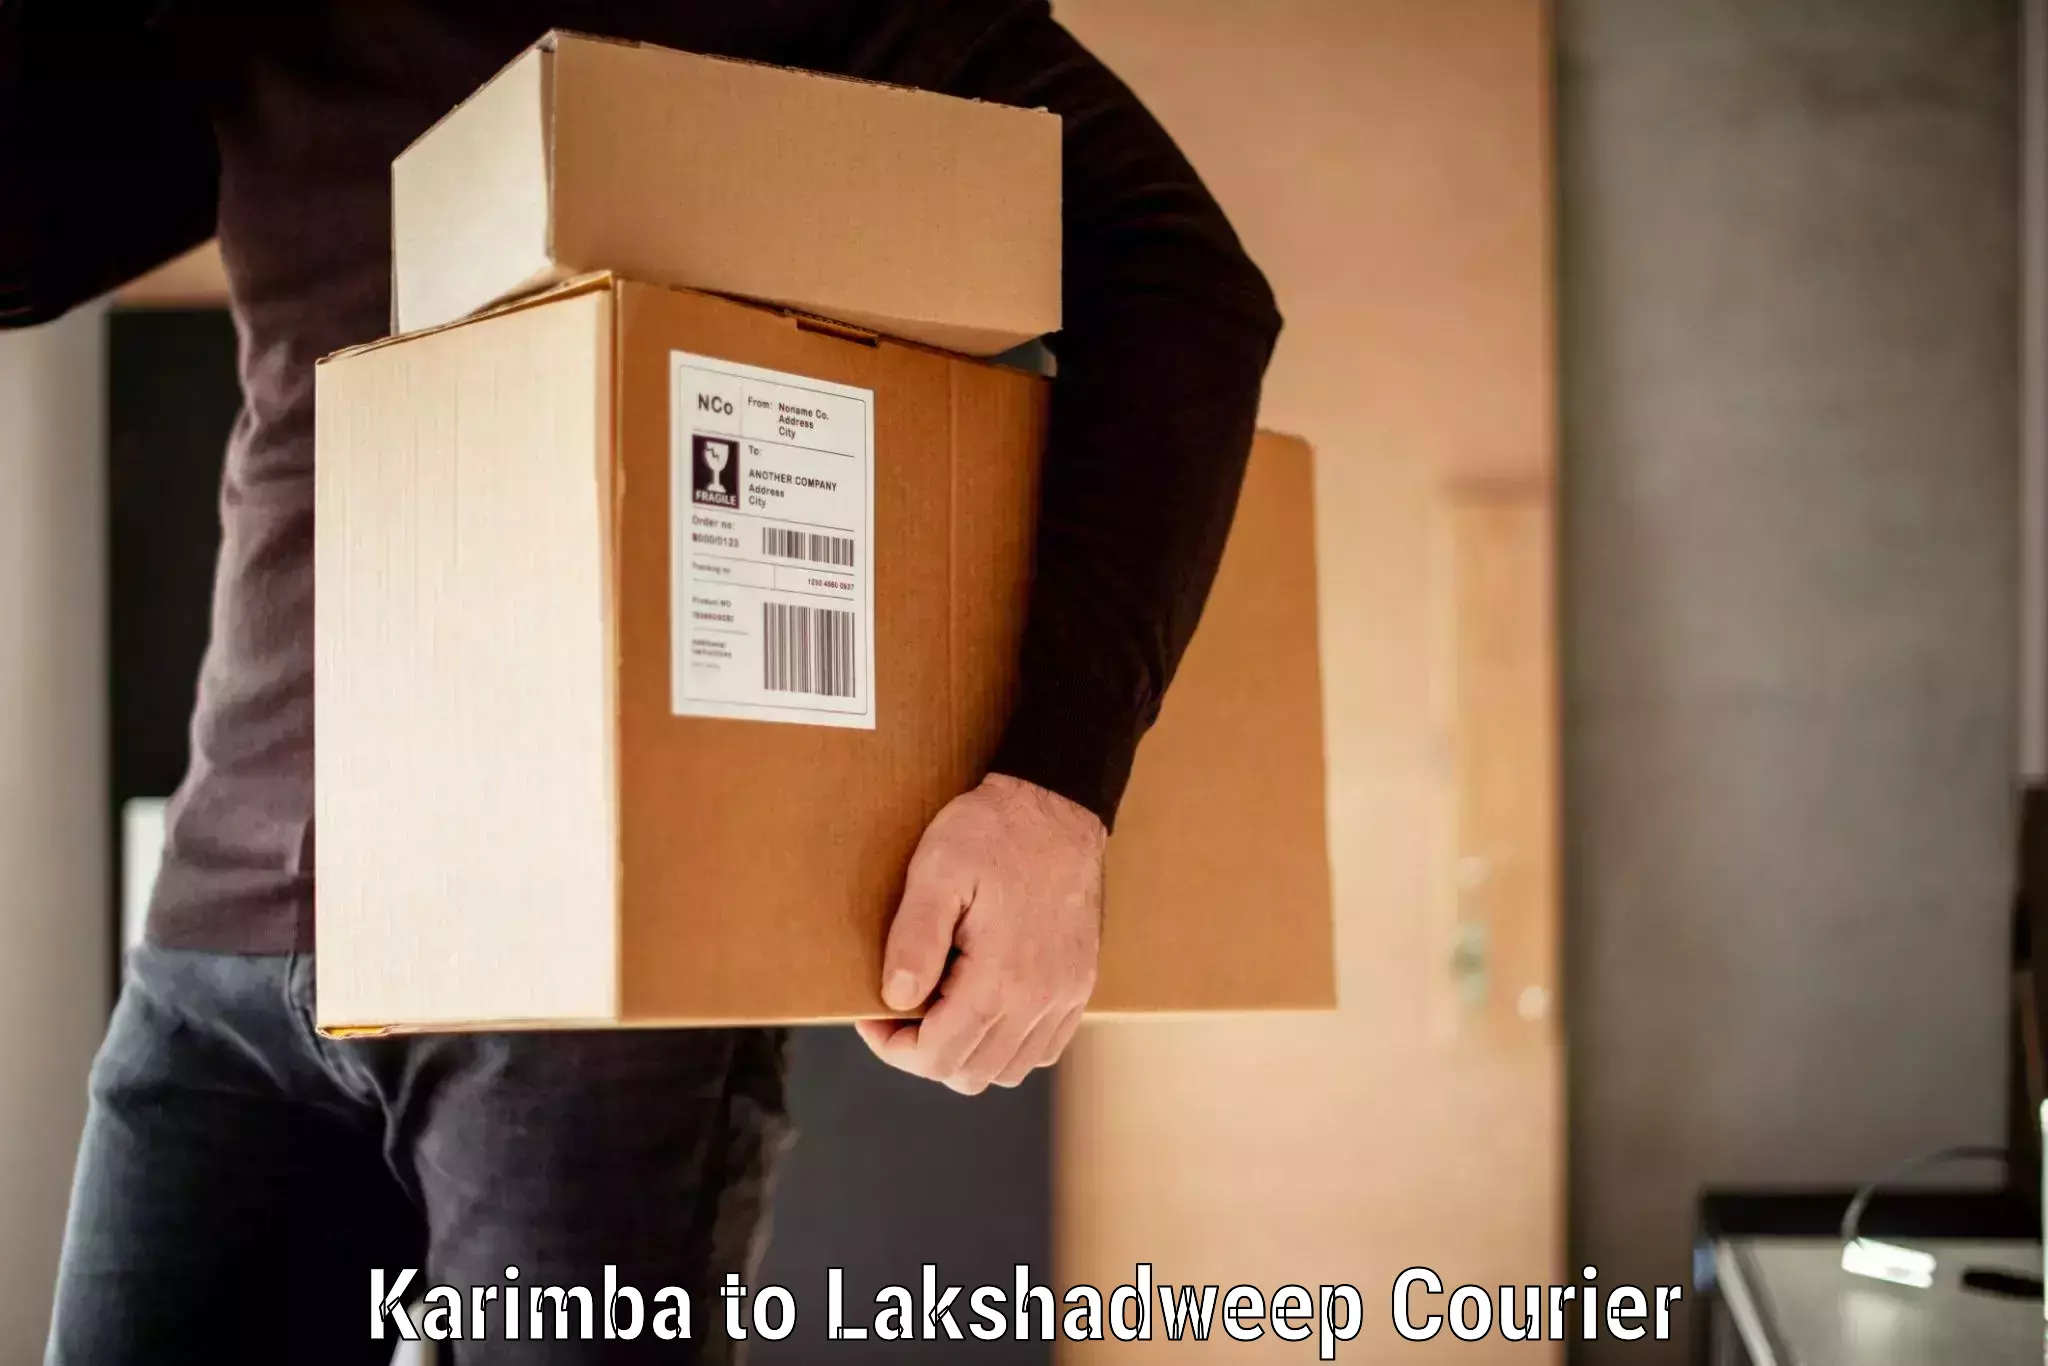 Baggage transport cost Karimba to Lakshadweep